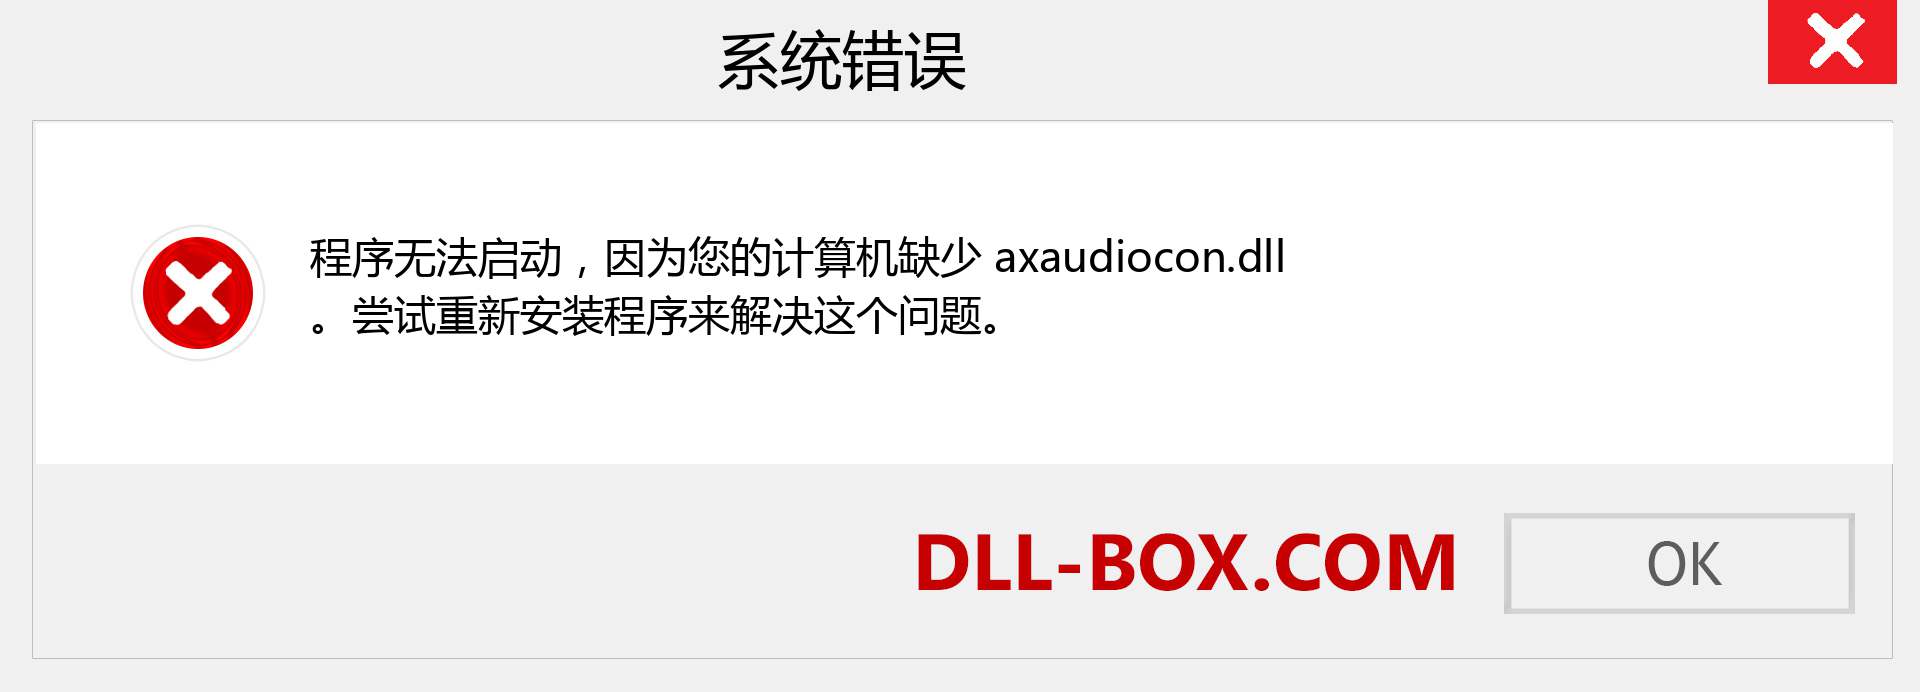 axaudiocon.dll 文件丢失？。 适用于 Windows 7、8、10 的下载 - 修复 Windows、照片、图像上的 axaudiocon dll 丢失错误